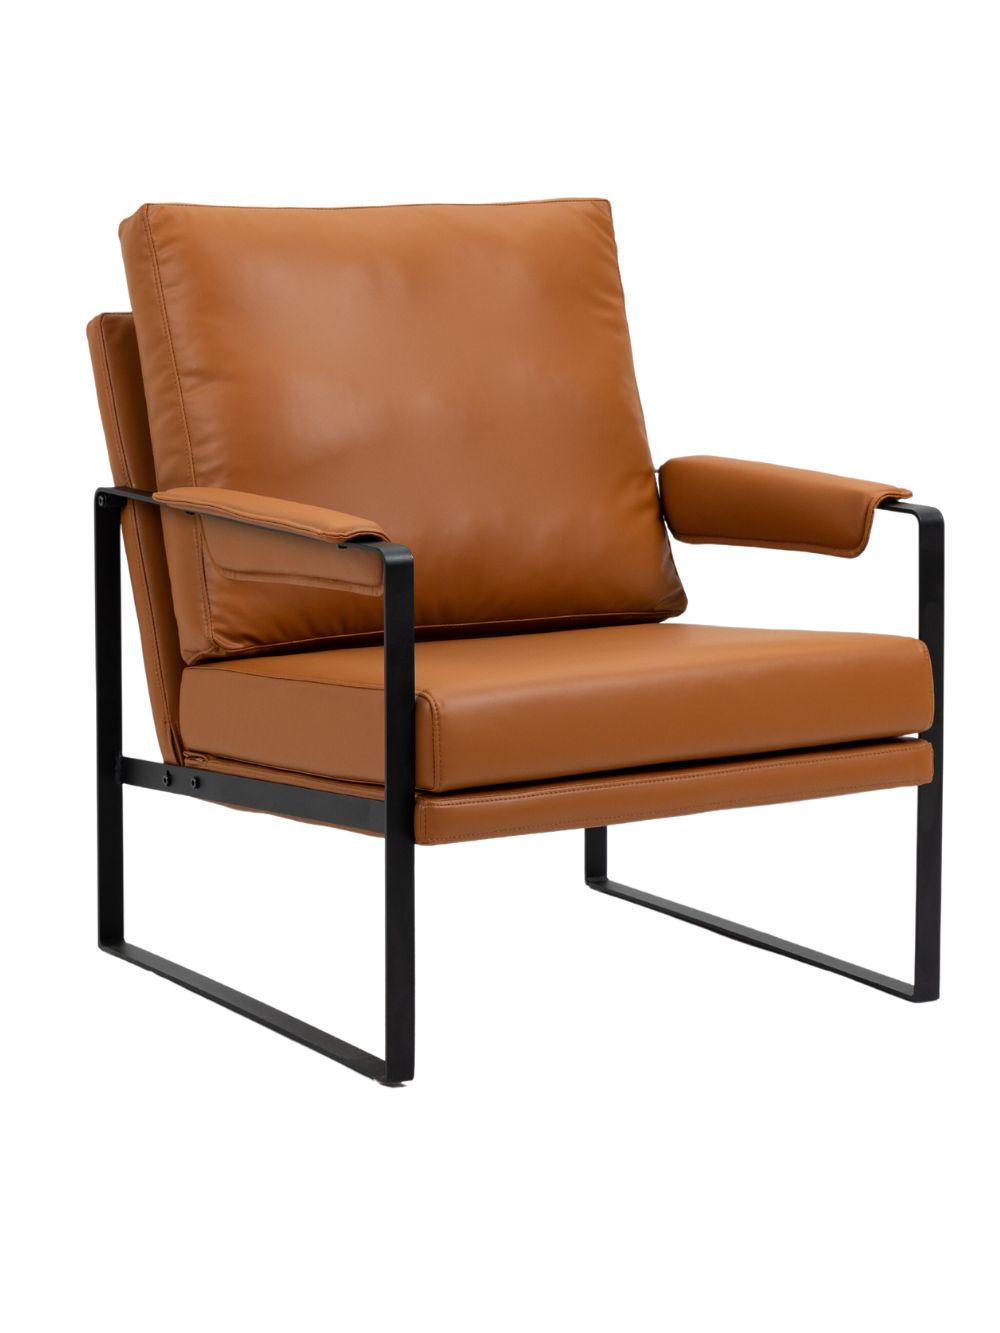 Cambry 單座位仿皮梳化椅 - IFCO Hong Kong